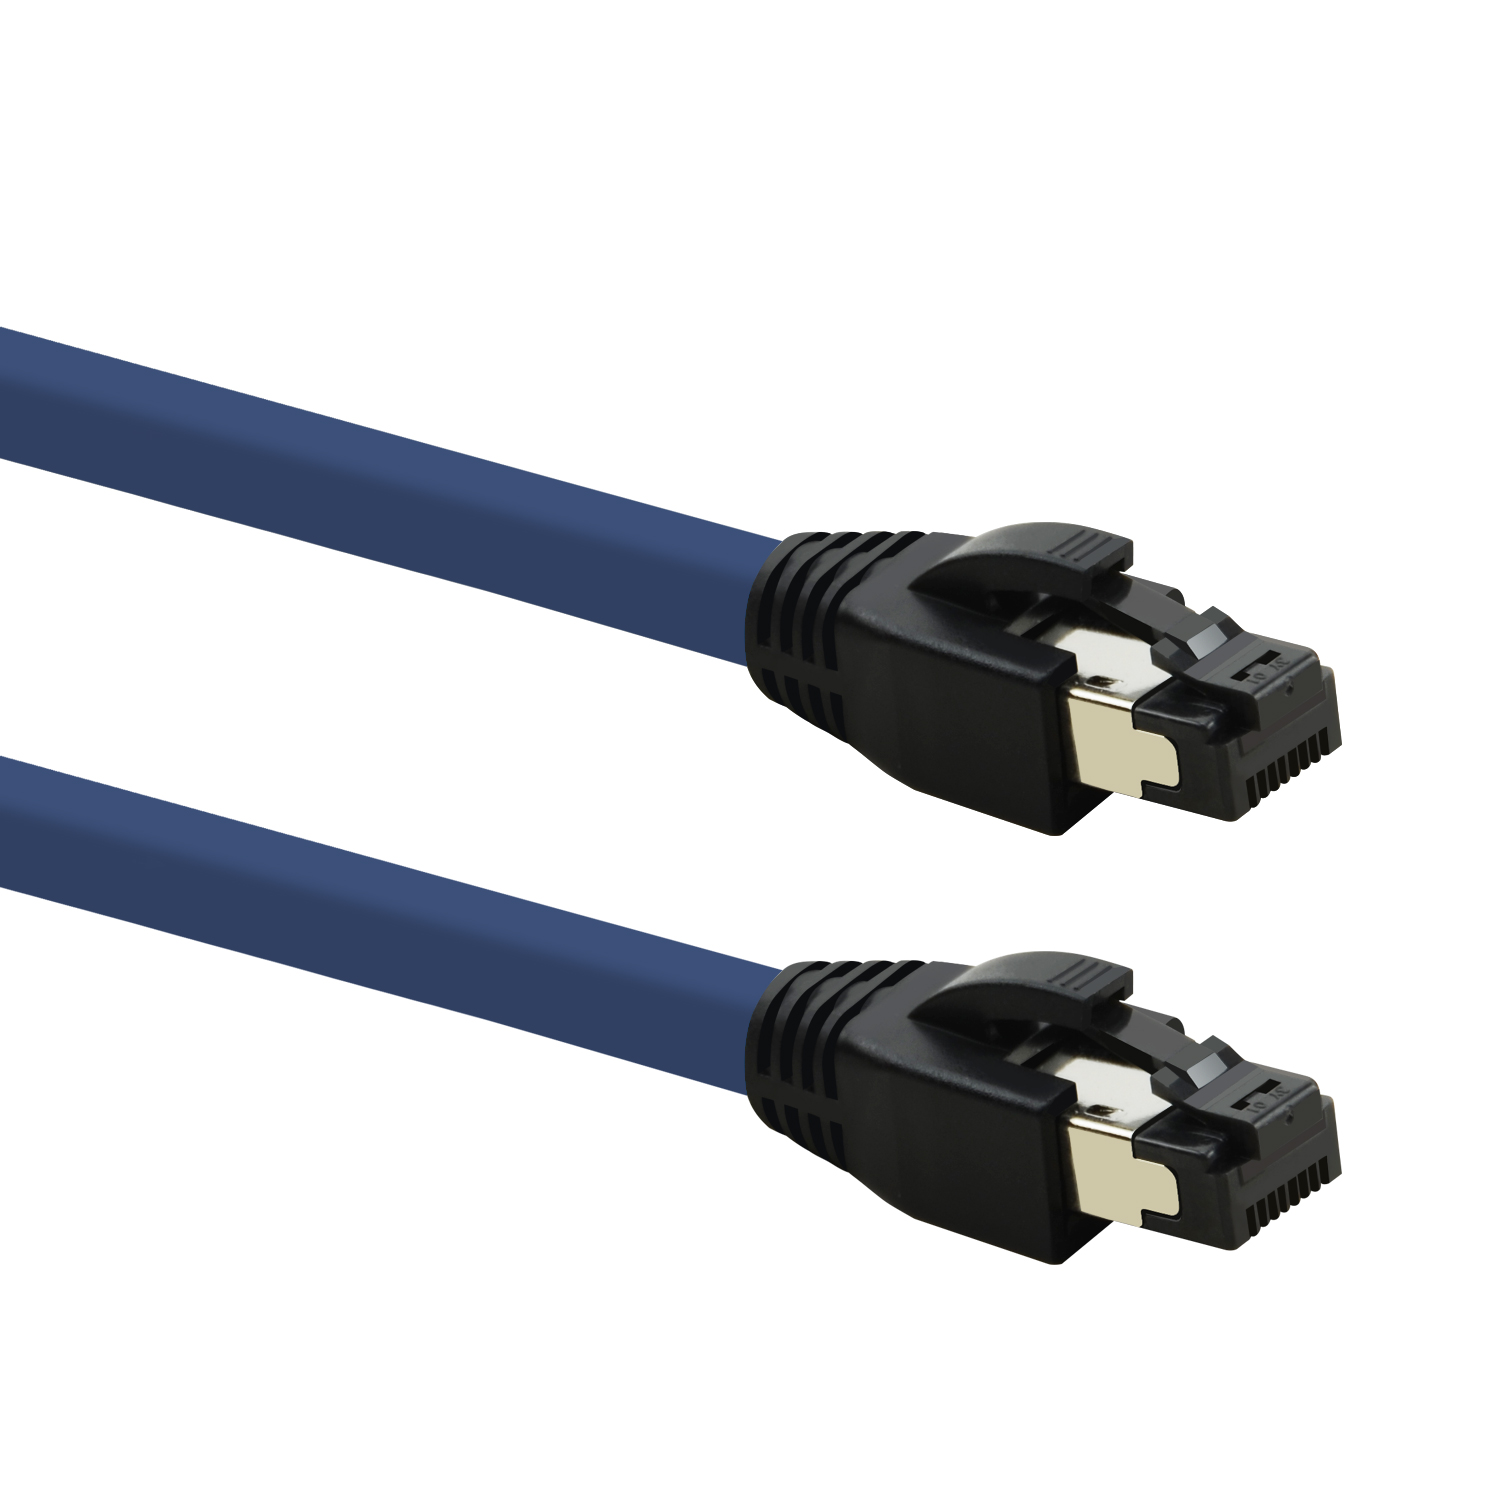 TPFNET 10m Patchkabel / Netzwerkkabel m GBit, 40 blau, 10 S/FTP Netzwerkkabel